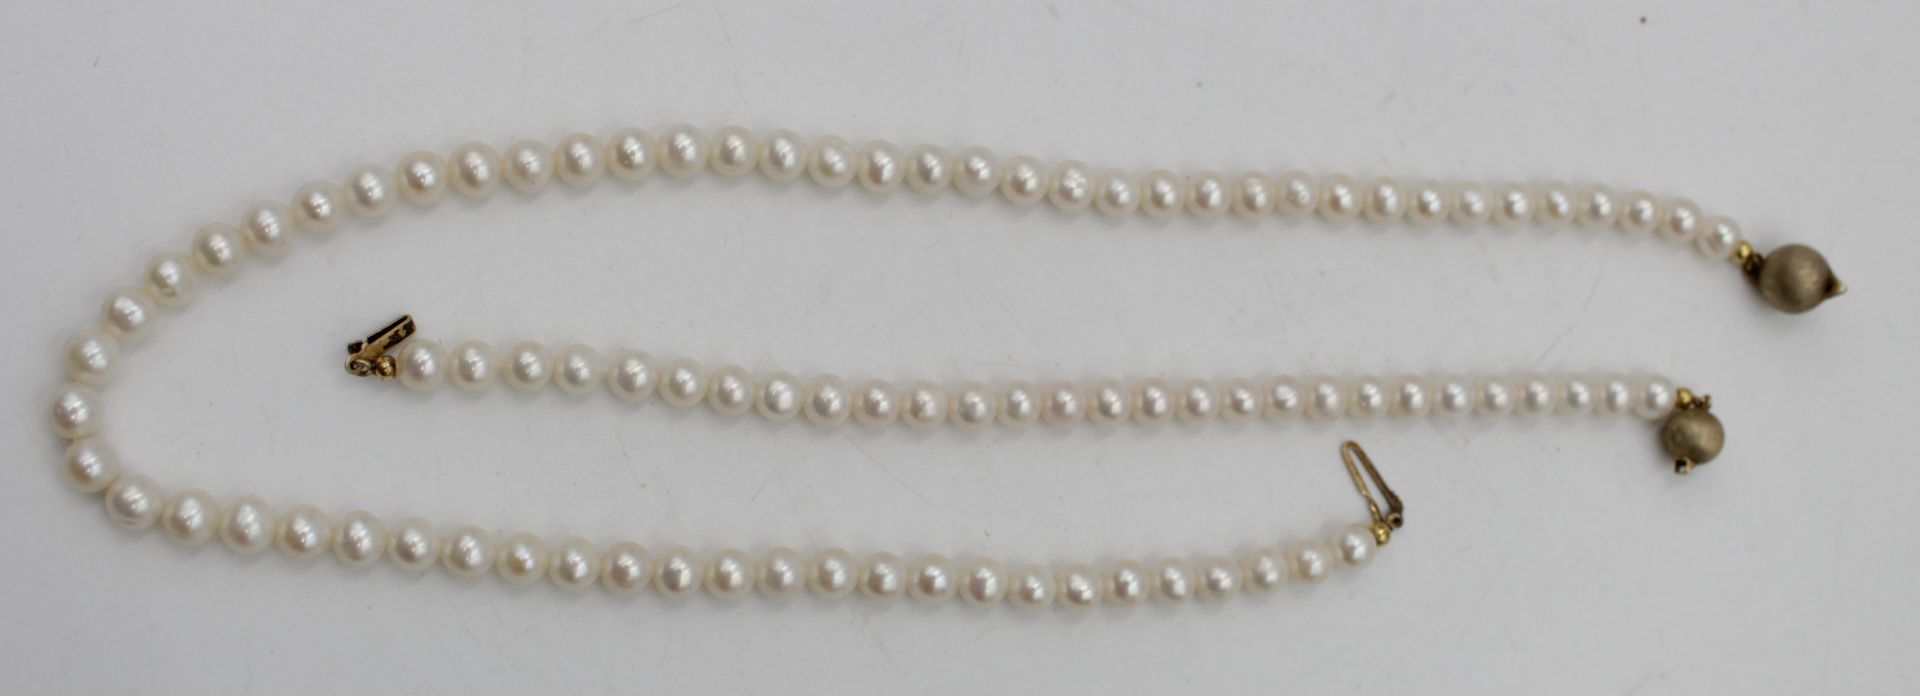 Armband und Kette mit Perlen Schließen Silber 925 vergoldet , Armband L- 18cm Kette L-42cm - Bild 2 aus 5